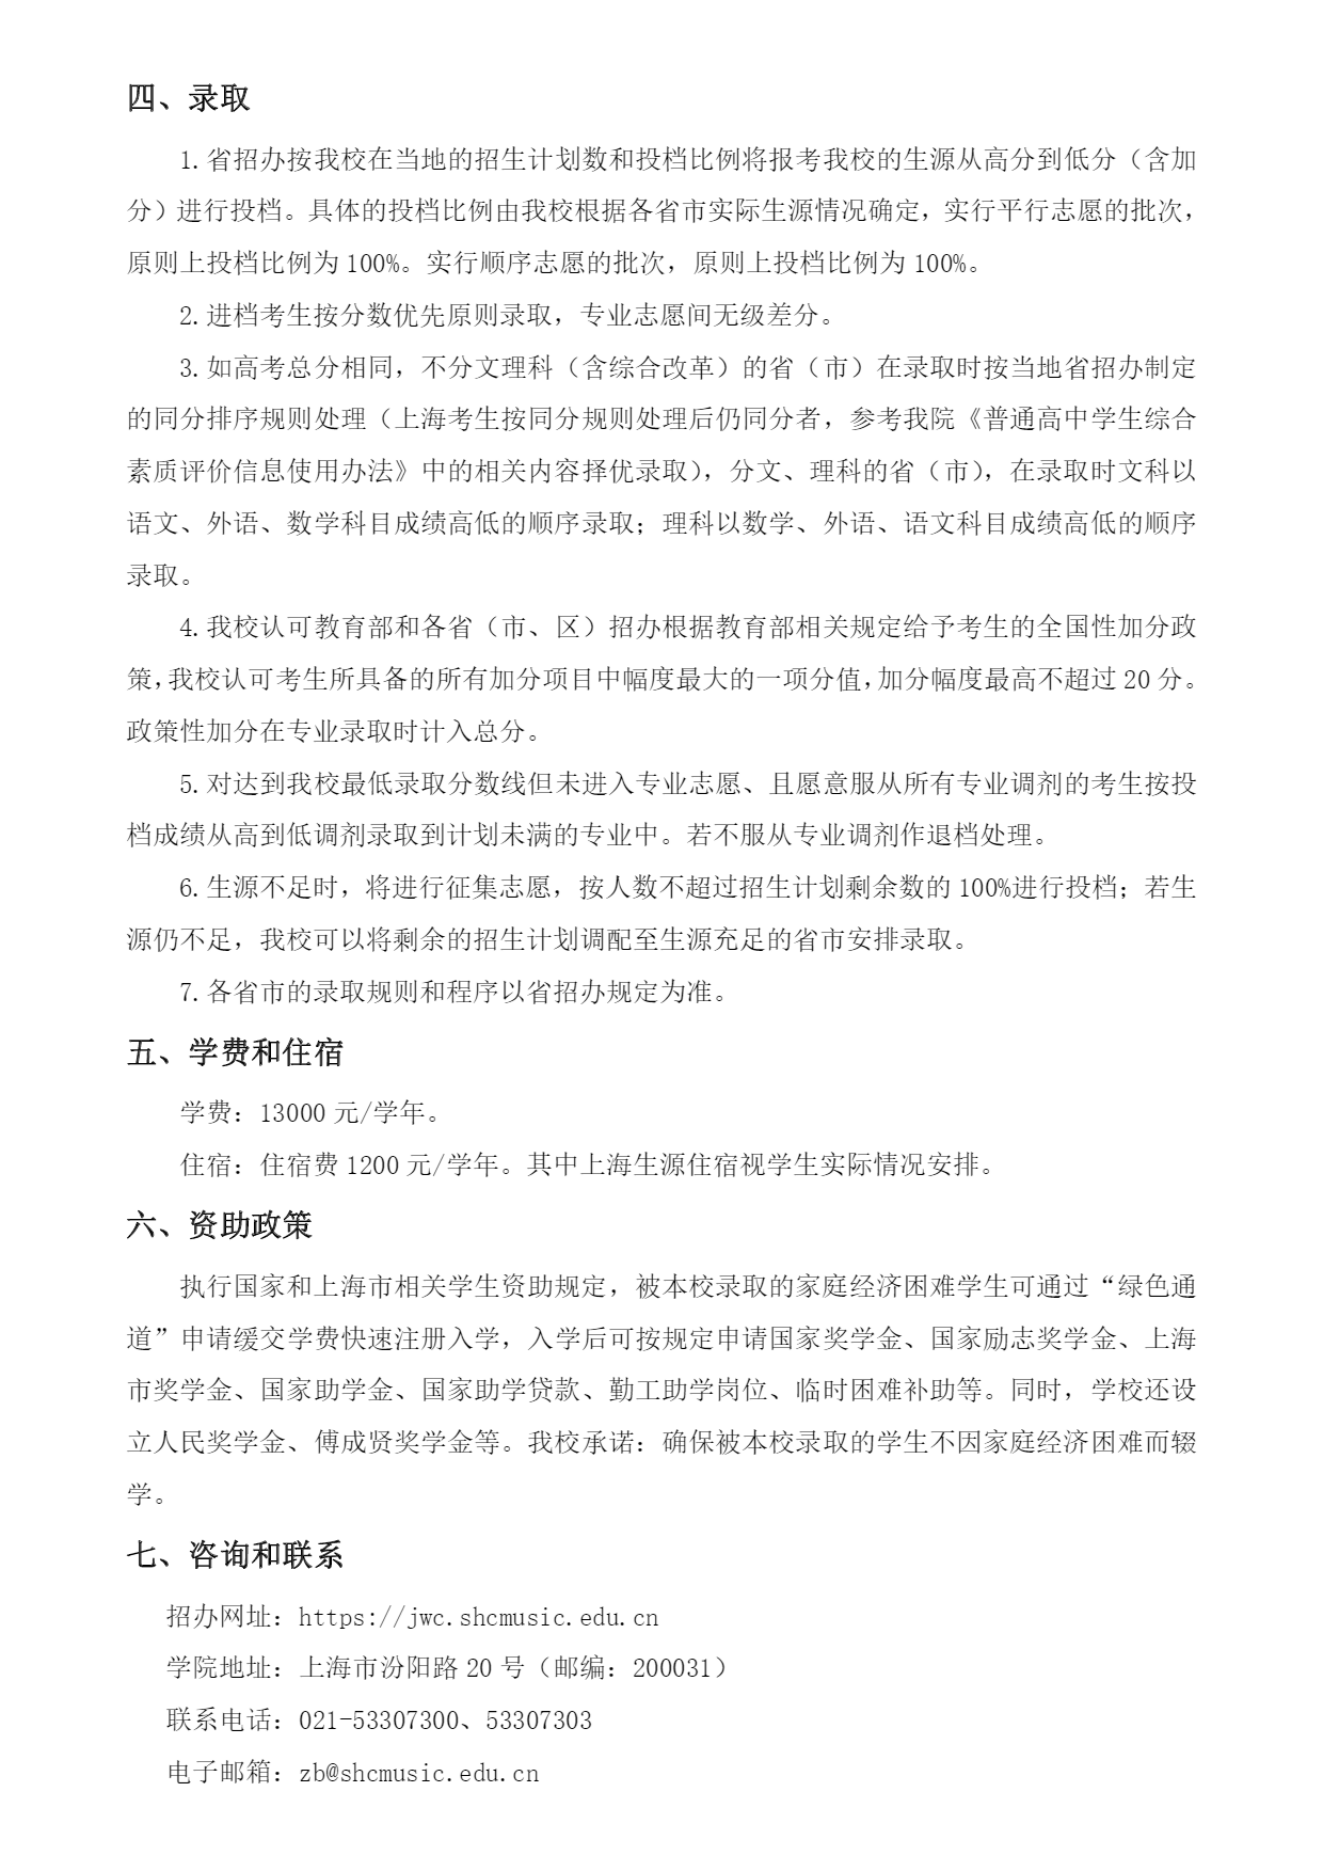 上海音乐学院－2023年普通类本科专业招生章程